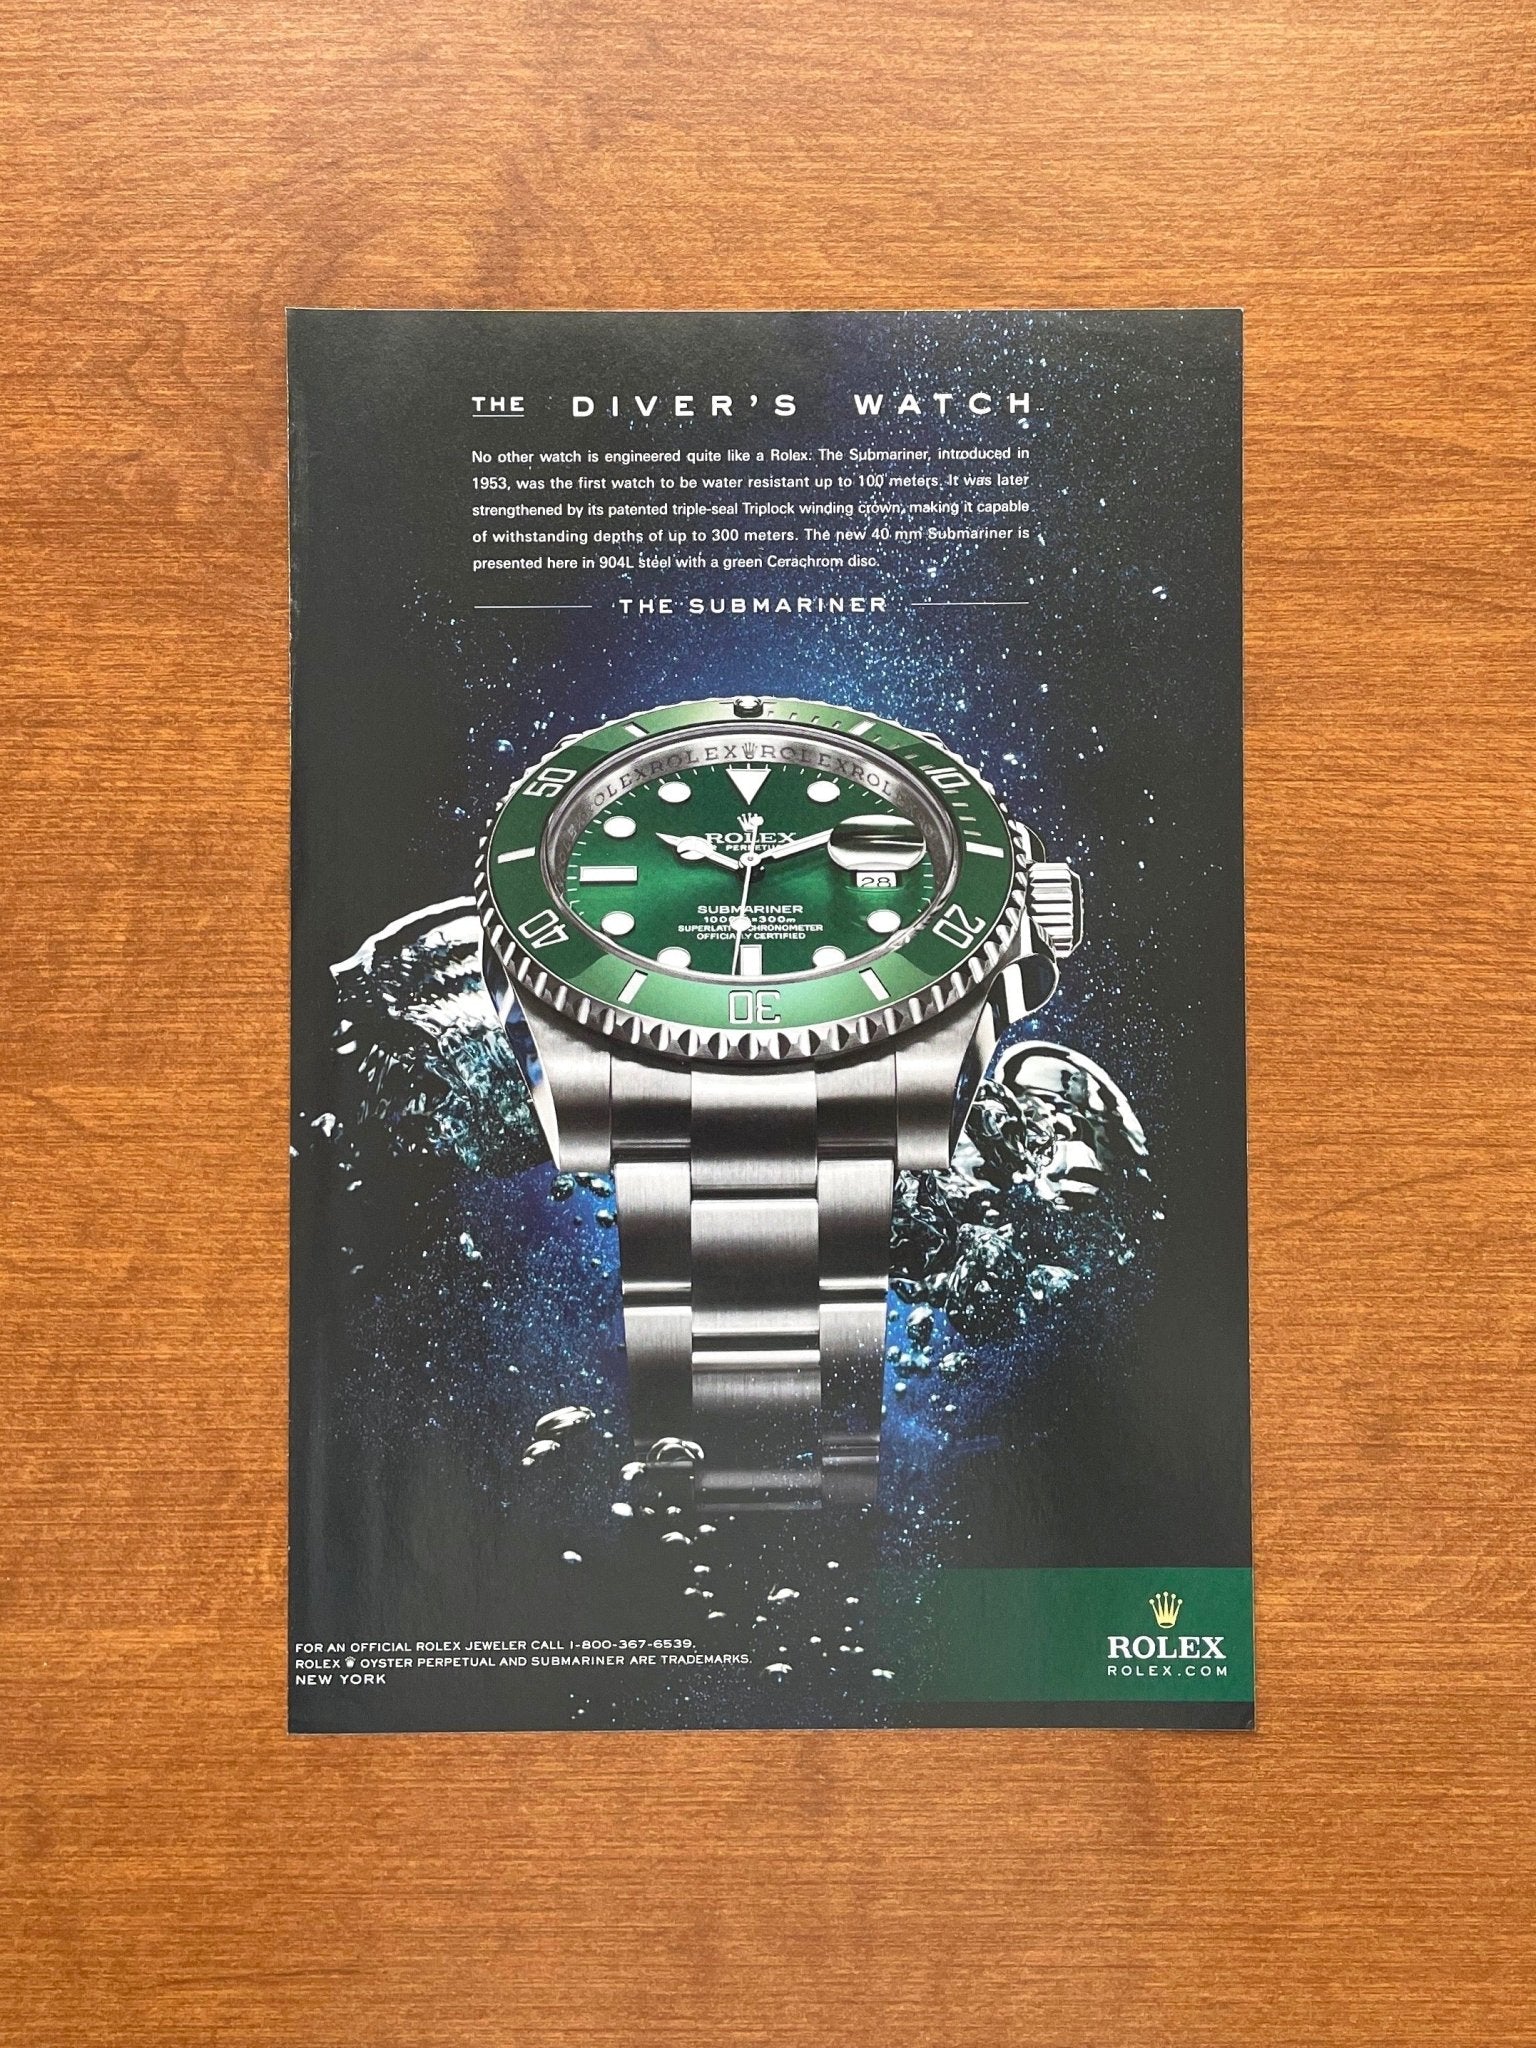 2010 Rolex "Hulk" Submariner Ref. 116610LV "Diver's Watch" Advertisement